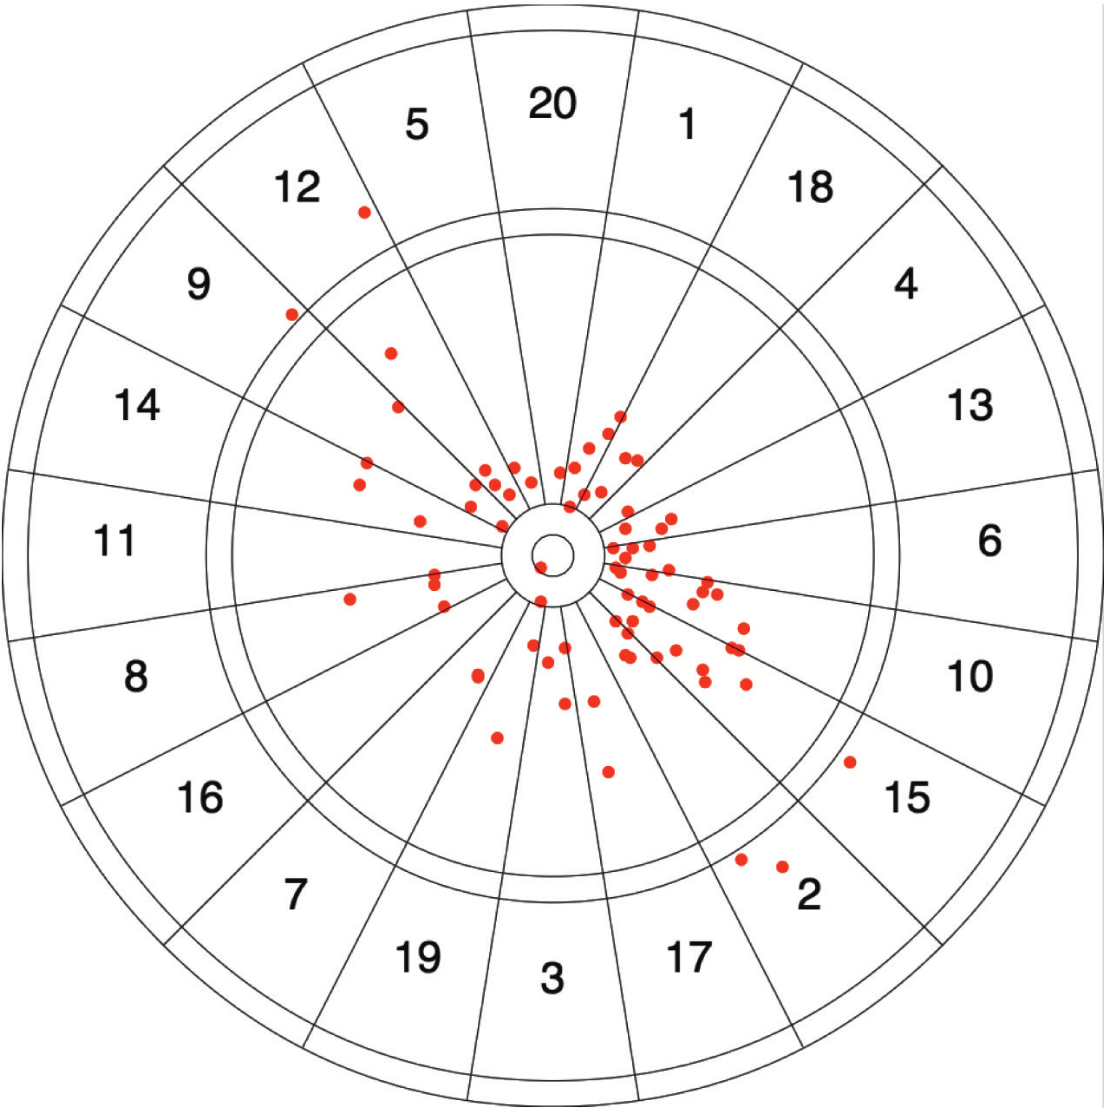 Figuur 5: Darts van een typische rechtshandige speler die mikt op de Bullseye. Afwijkingen linksboven en rechtsonder het doel komen vaker voor dan linksonder en rechtsboven. De afwijking in de y-richting is groter dan de afwijking in de x-richting.